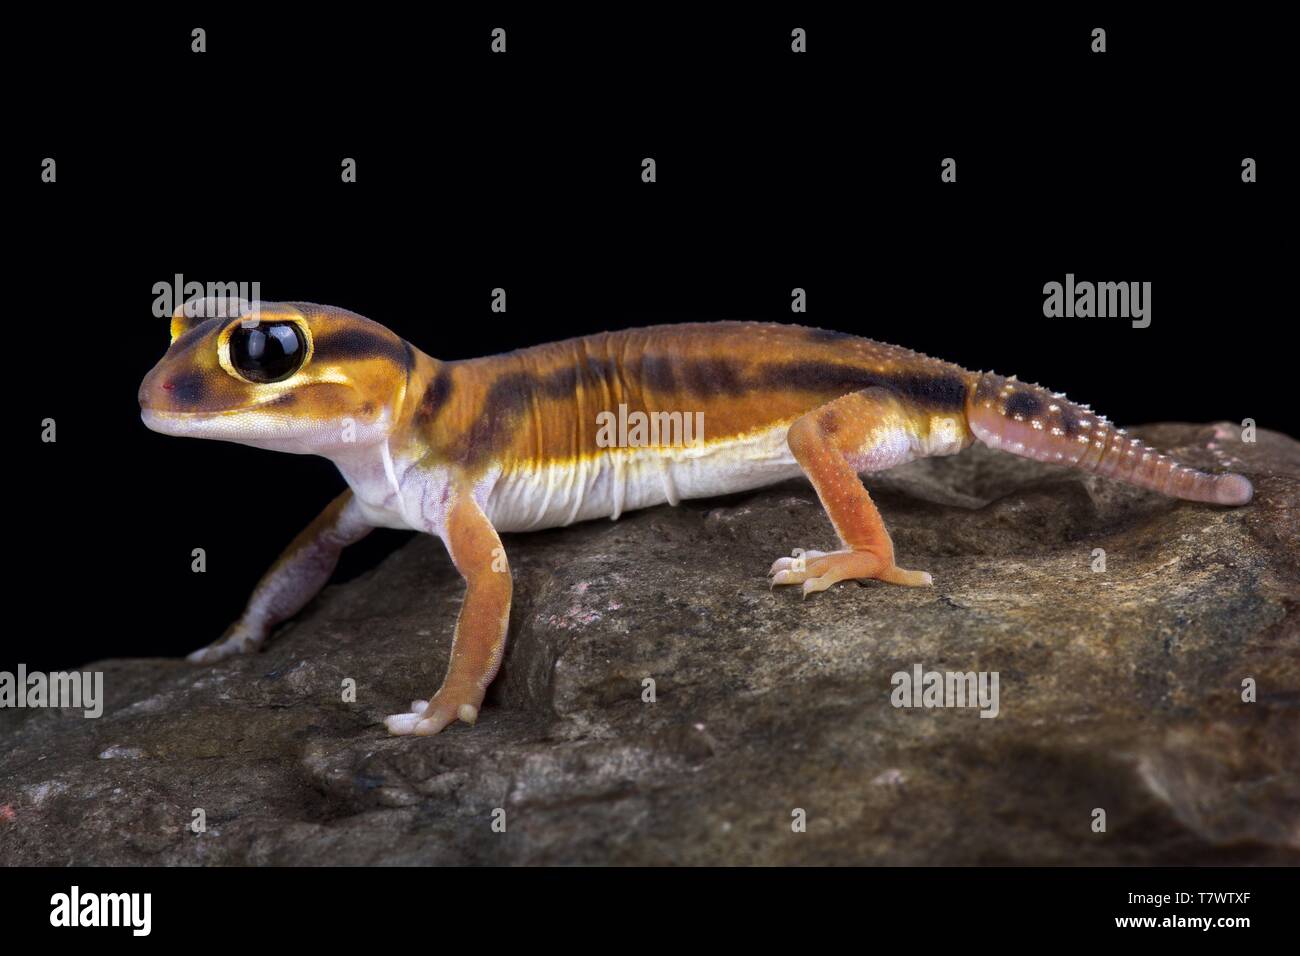 Smooth knob-tailed gecko (Nephrurus laevissimus) Stock Photo